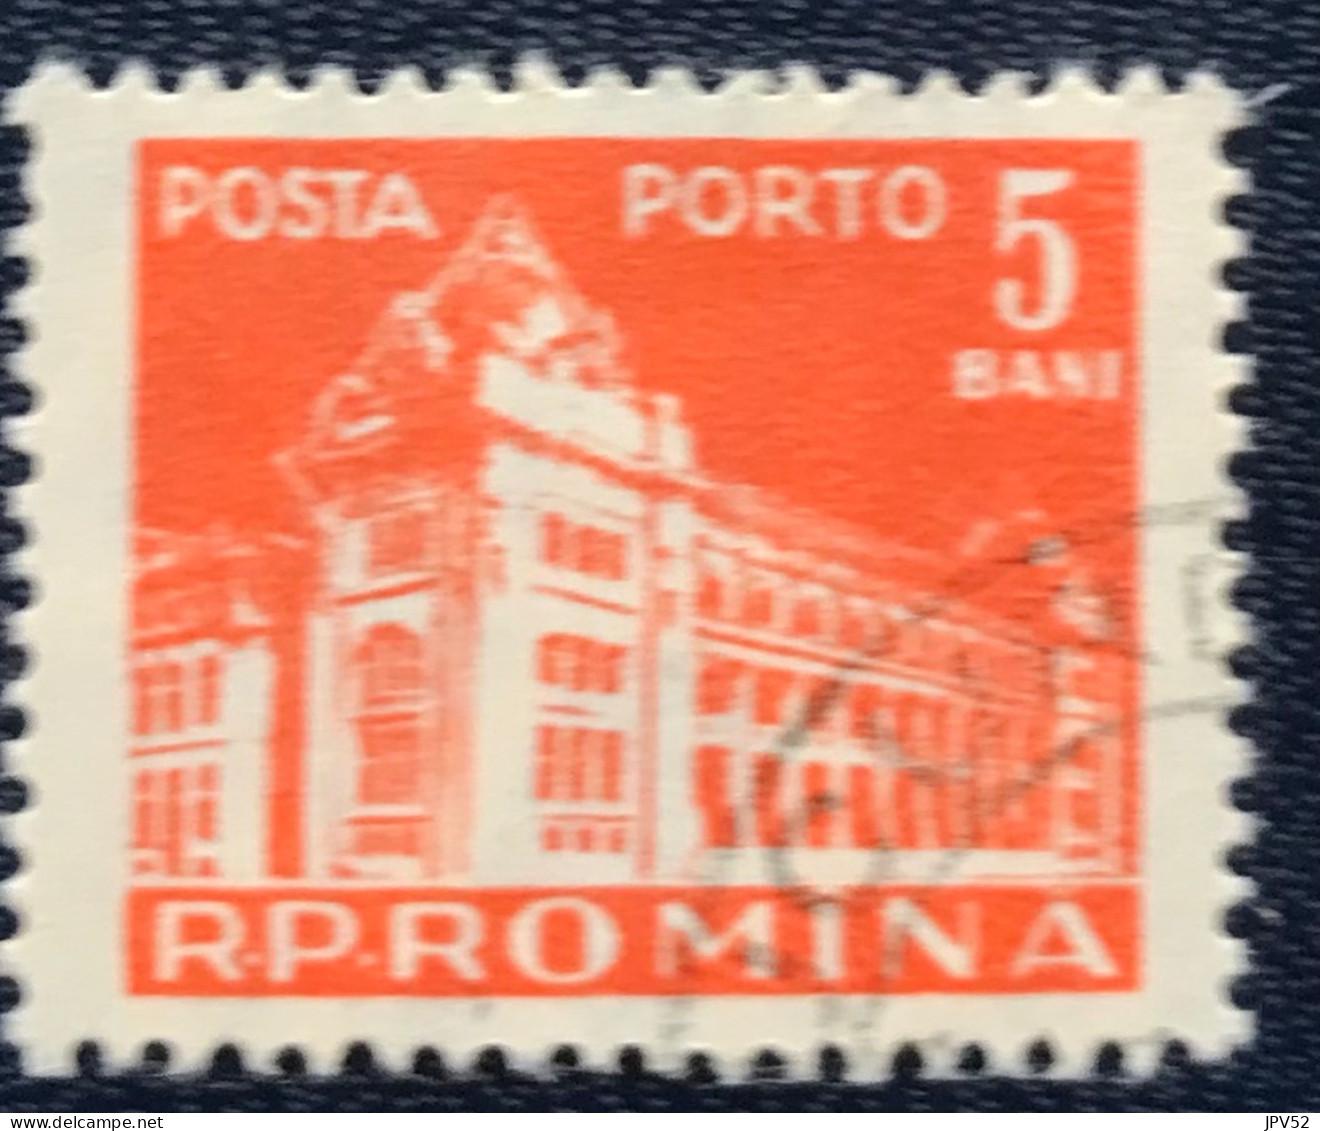 Romana - Roemenië - C14/54 - 1957 - (°)used - Michel 102 - Postkantoor - Impuestos